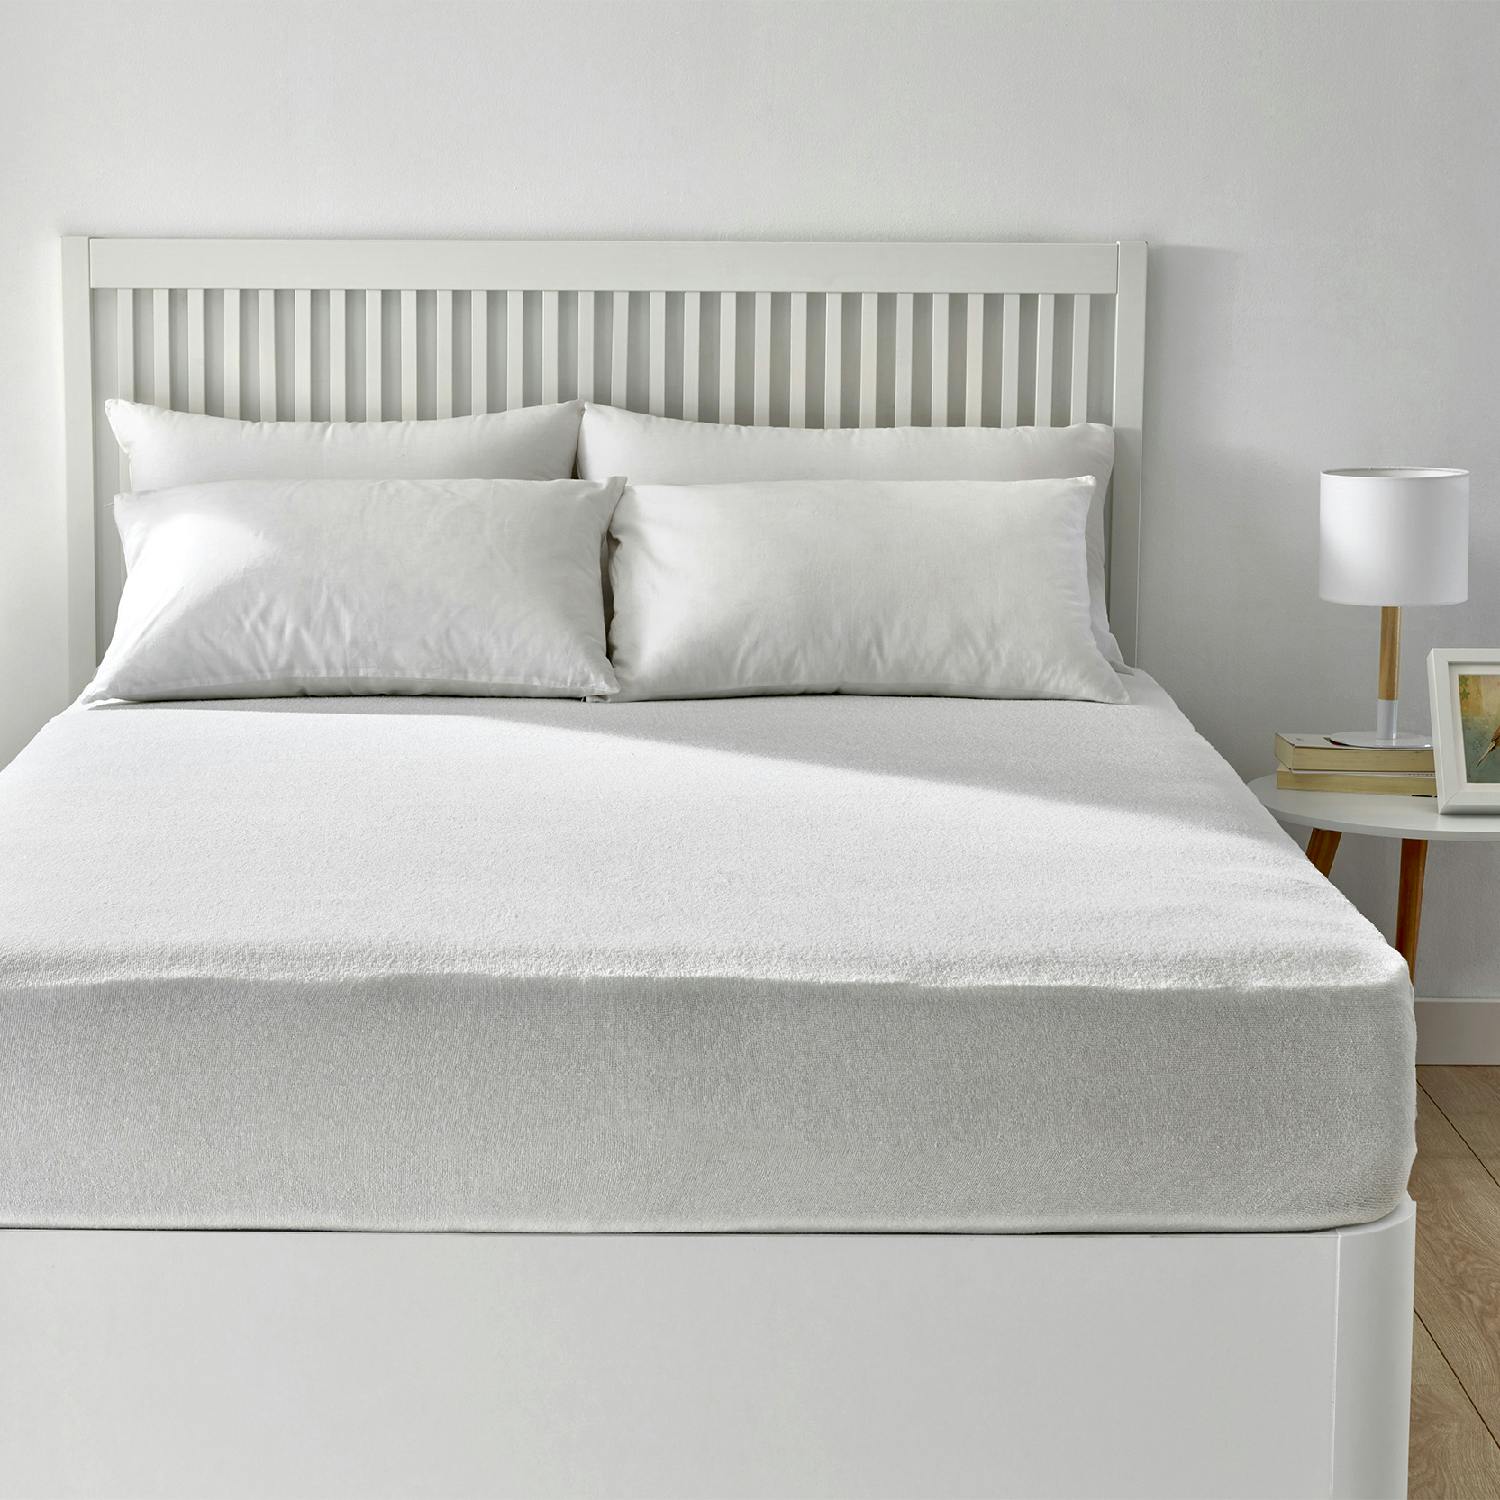 Protector de cama - Tencel® impermeable e hípertranspirable 90x190/200cm  PIKOLIN HOME, Rizo de algodón